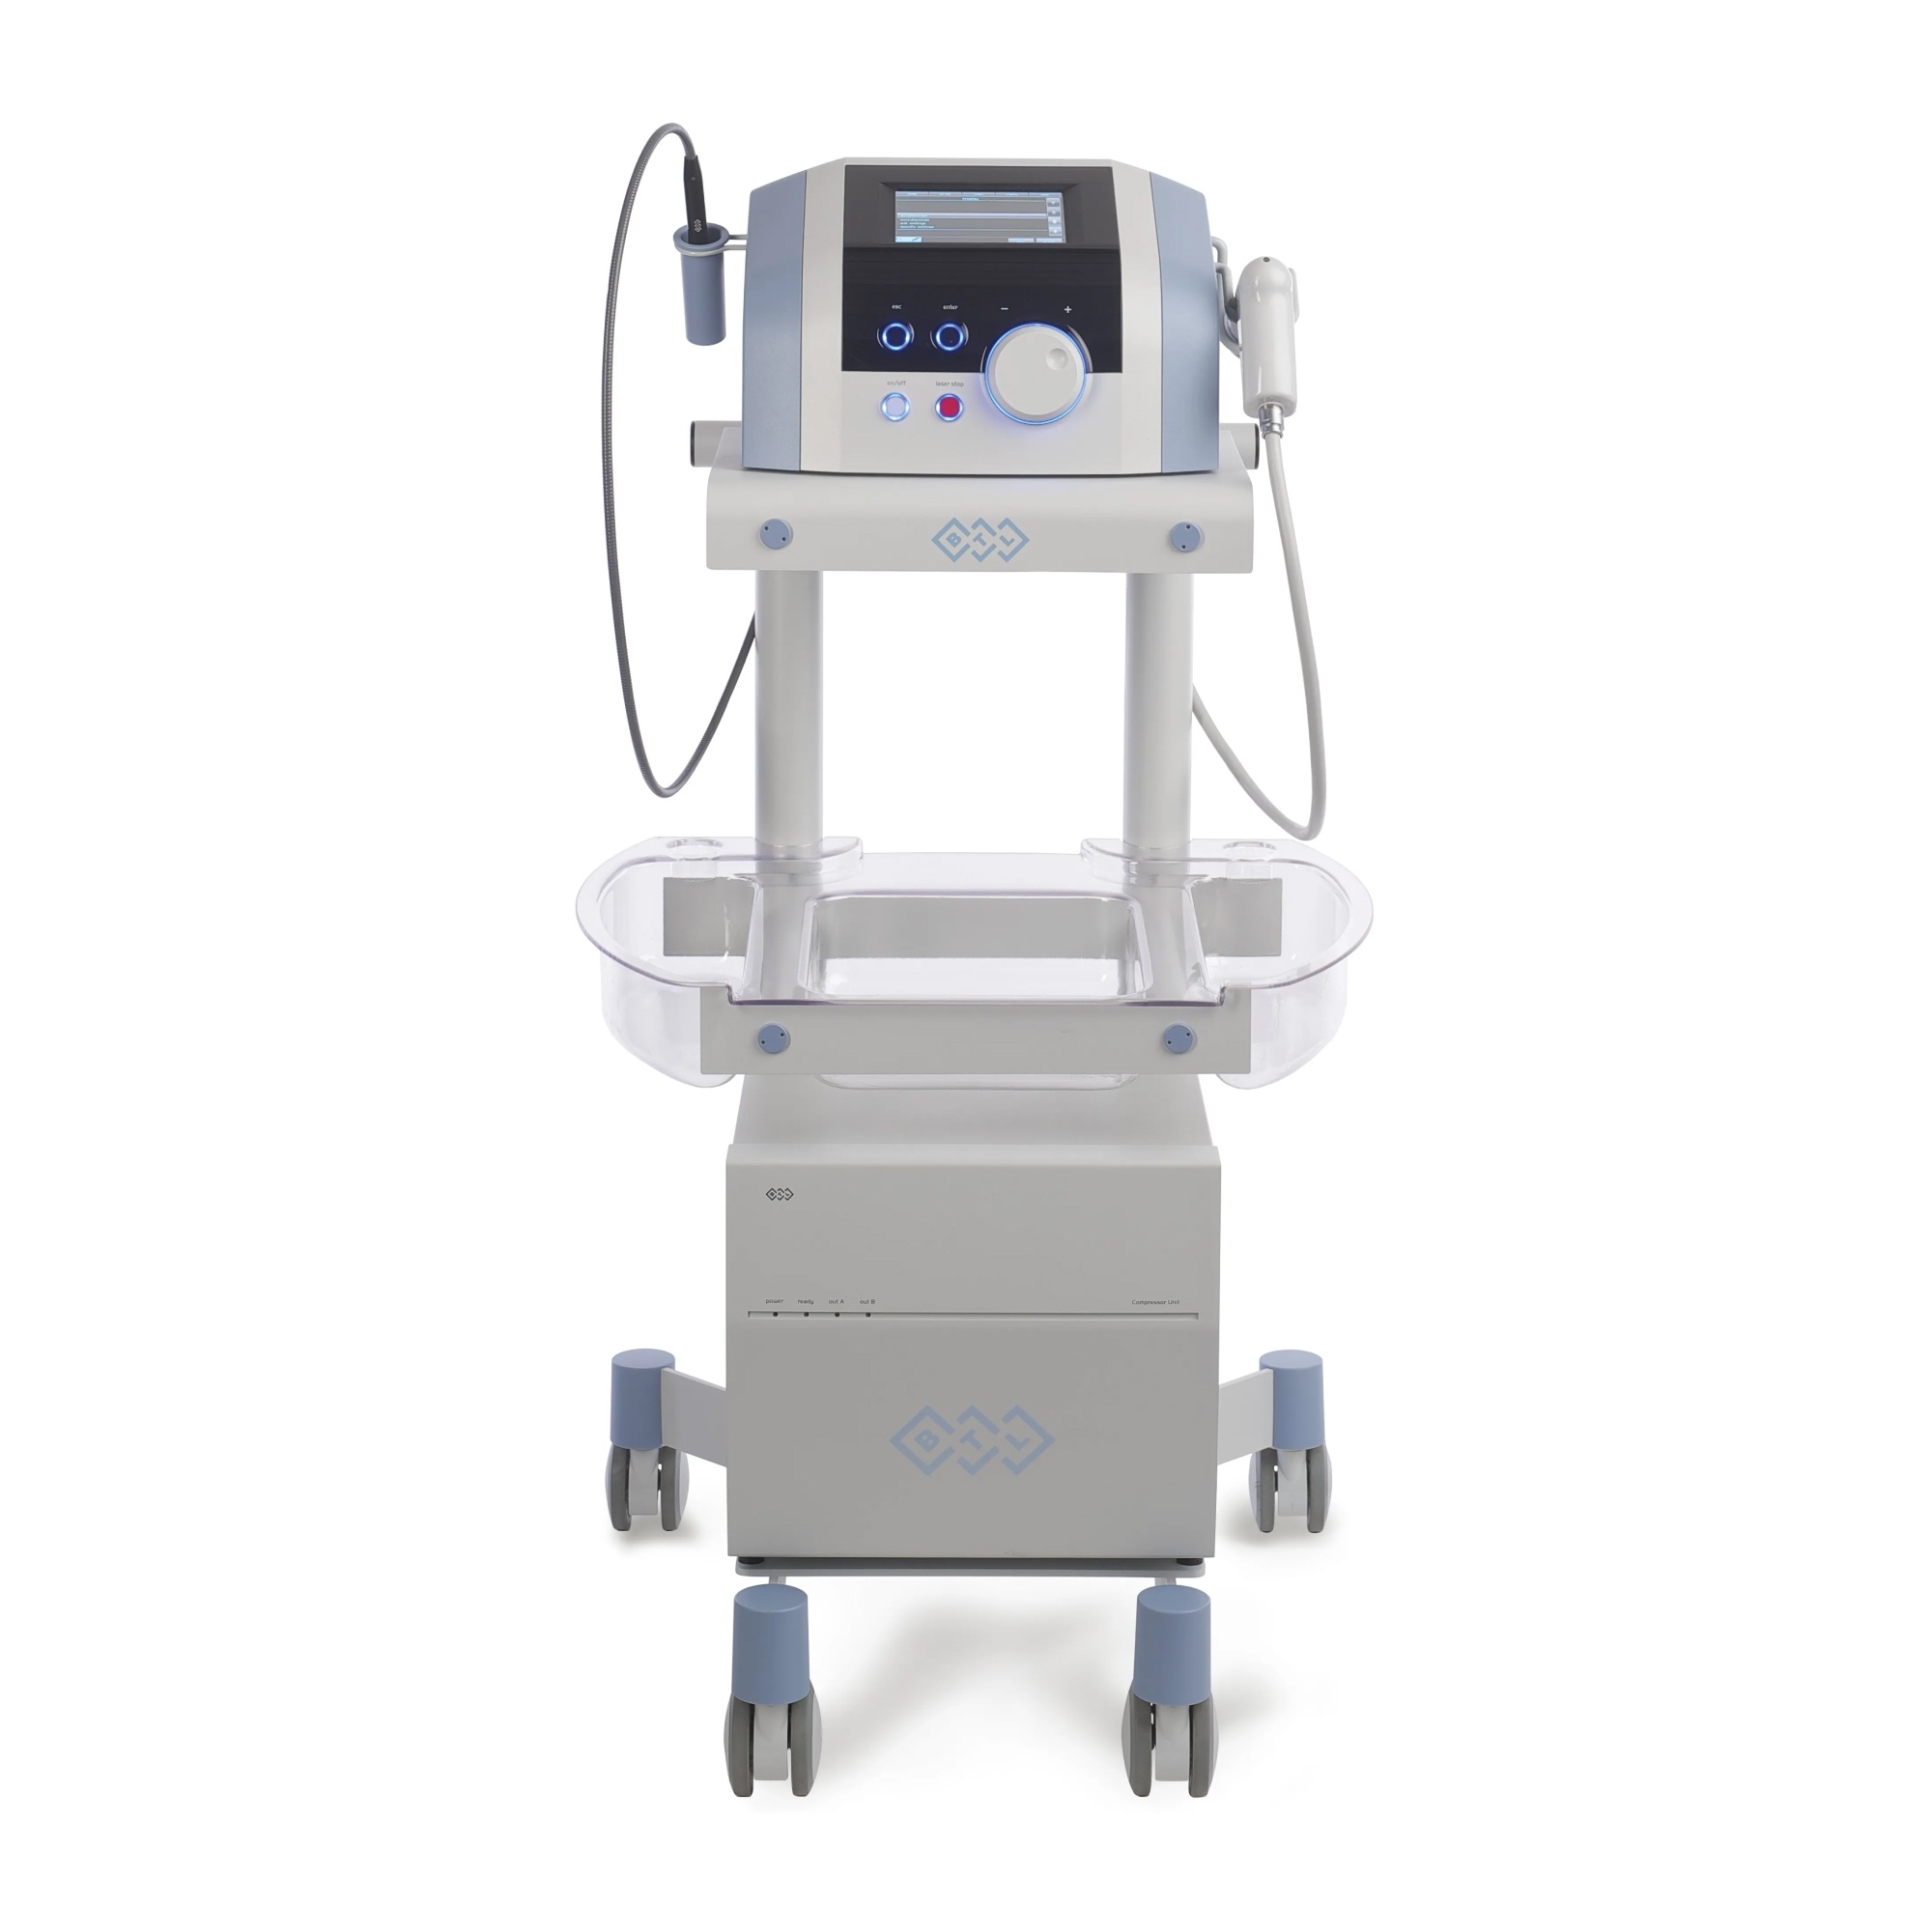 Аппарат ударно-волновой терапии BTL-6000 FSWT